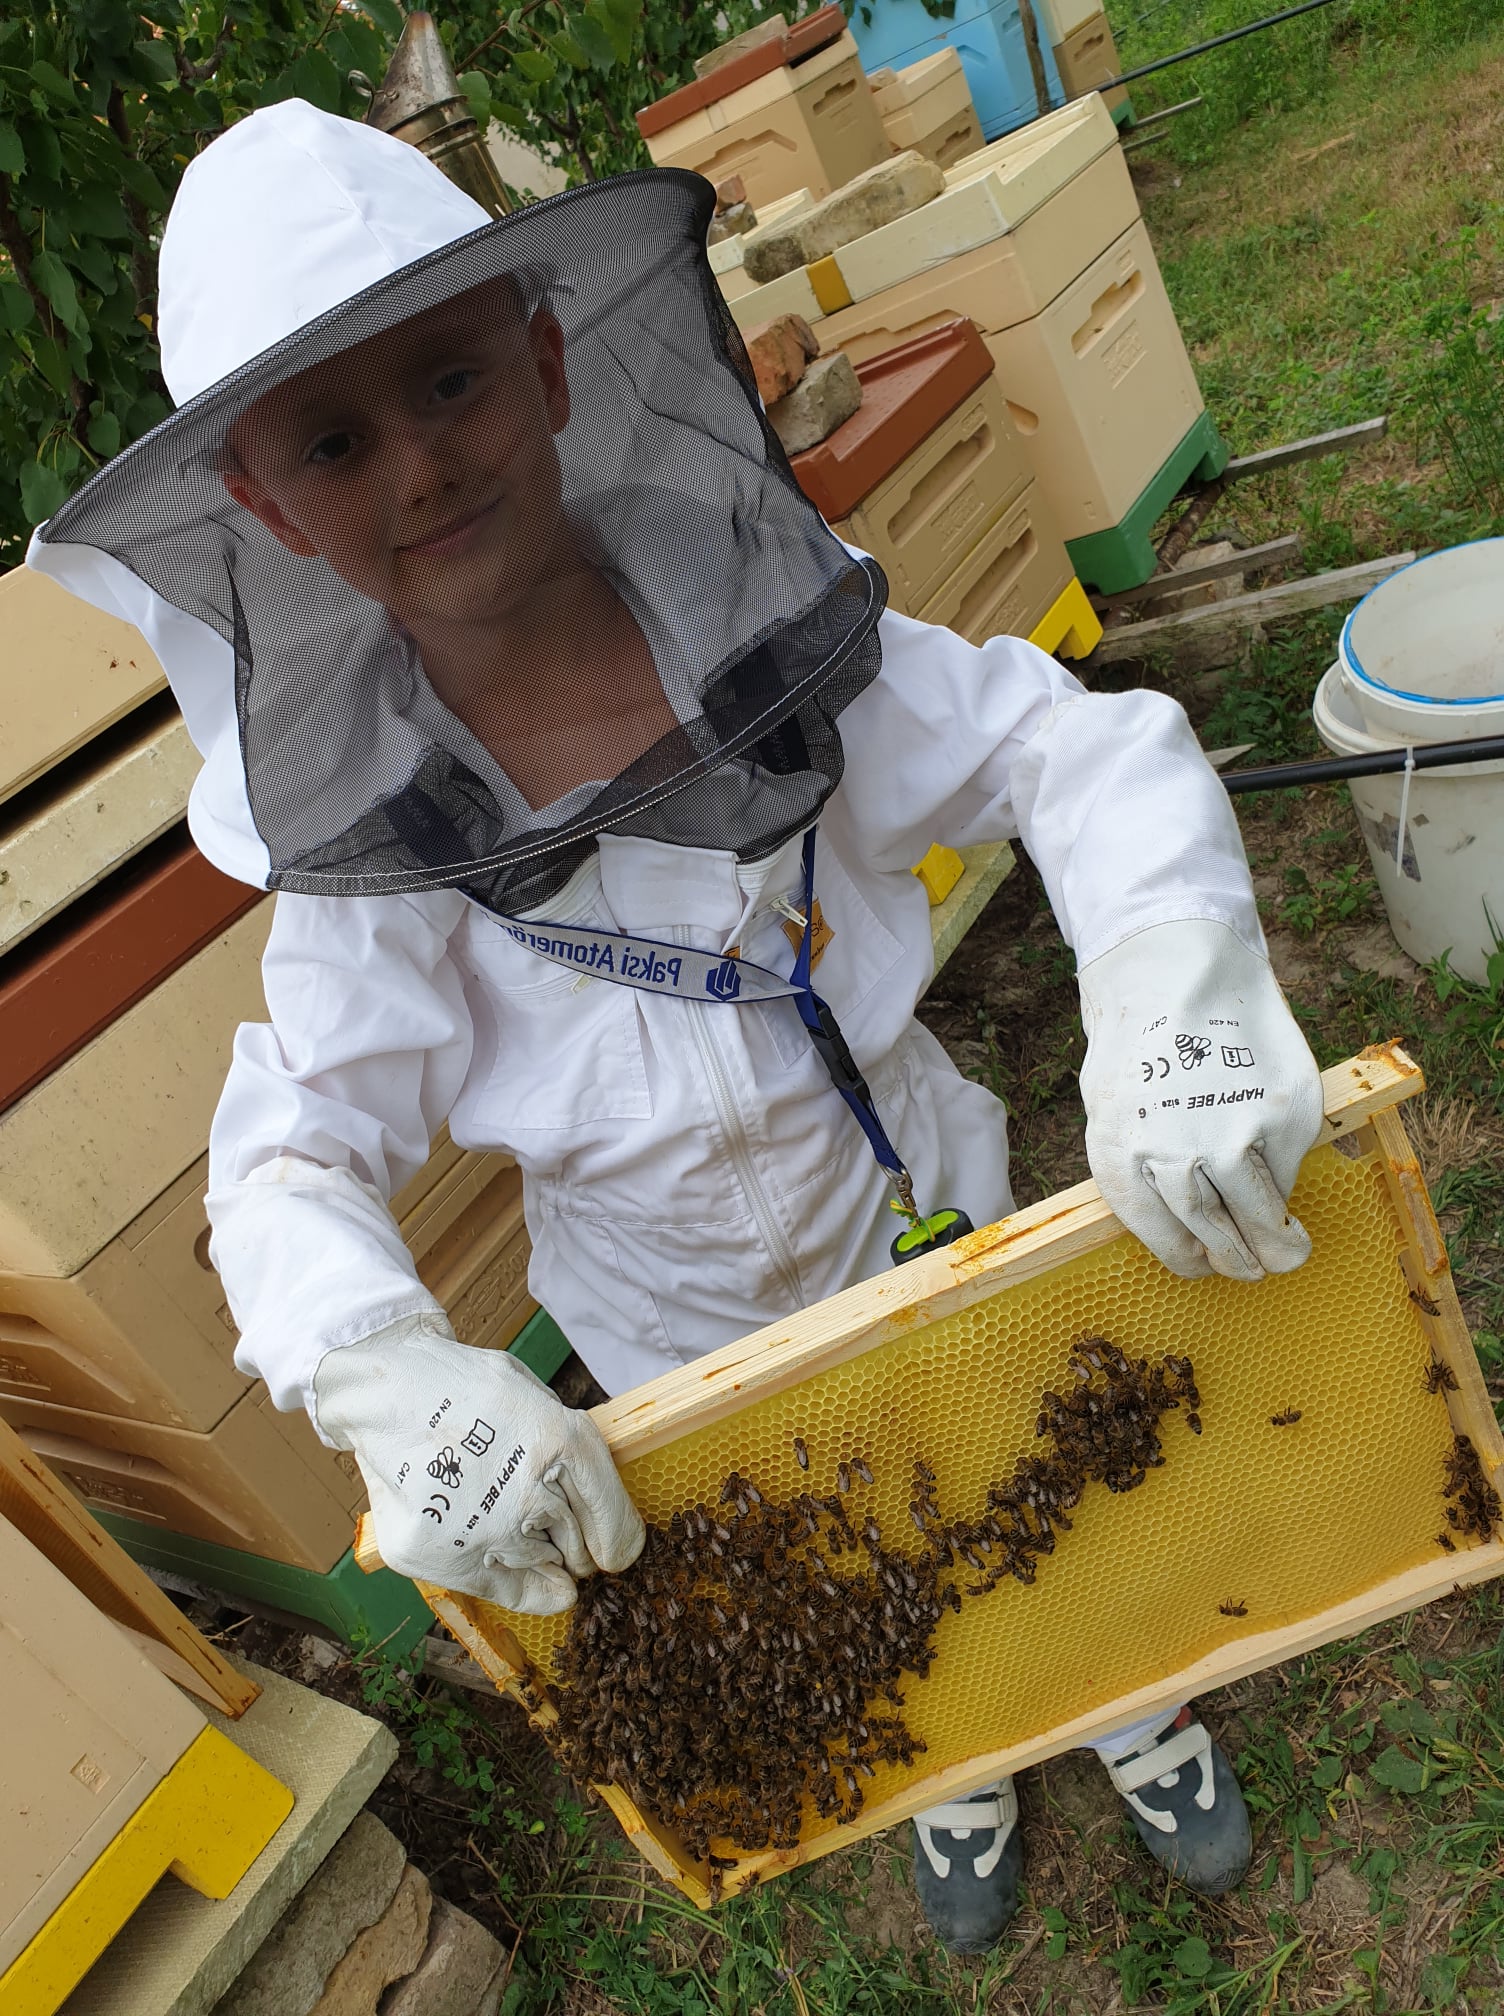 Kvalitný med priamo od včelára - My, Asbóthovci, vyrábame etický med. Elixír na imunitu je top produkt.